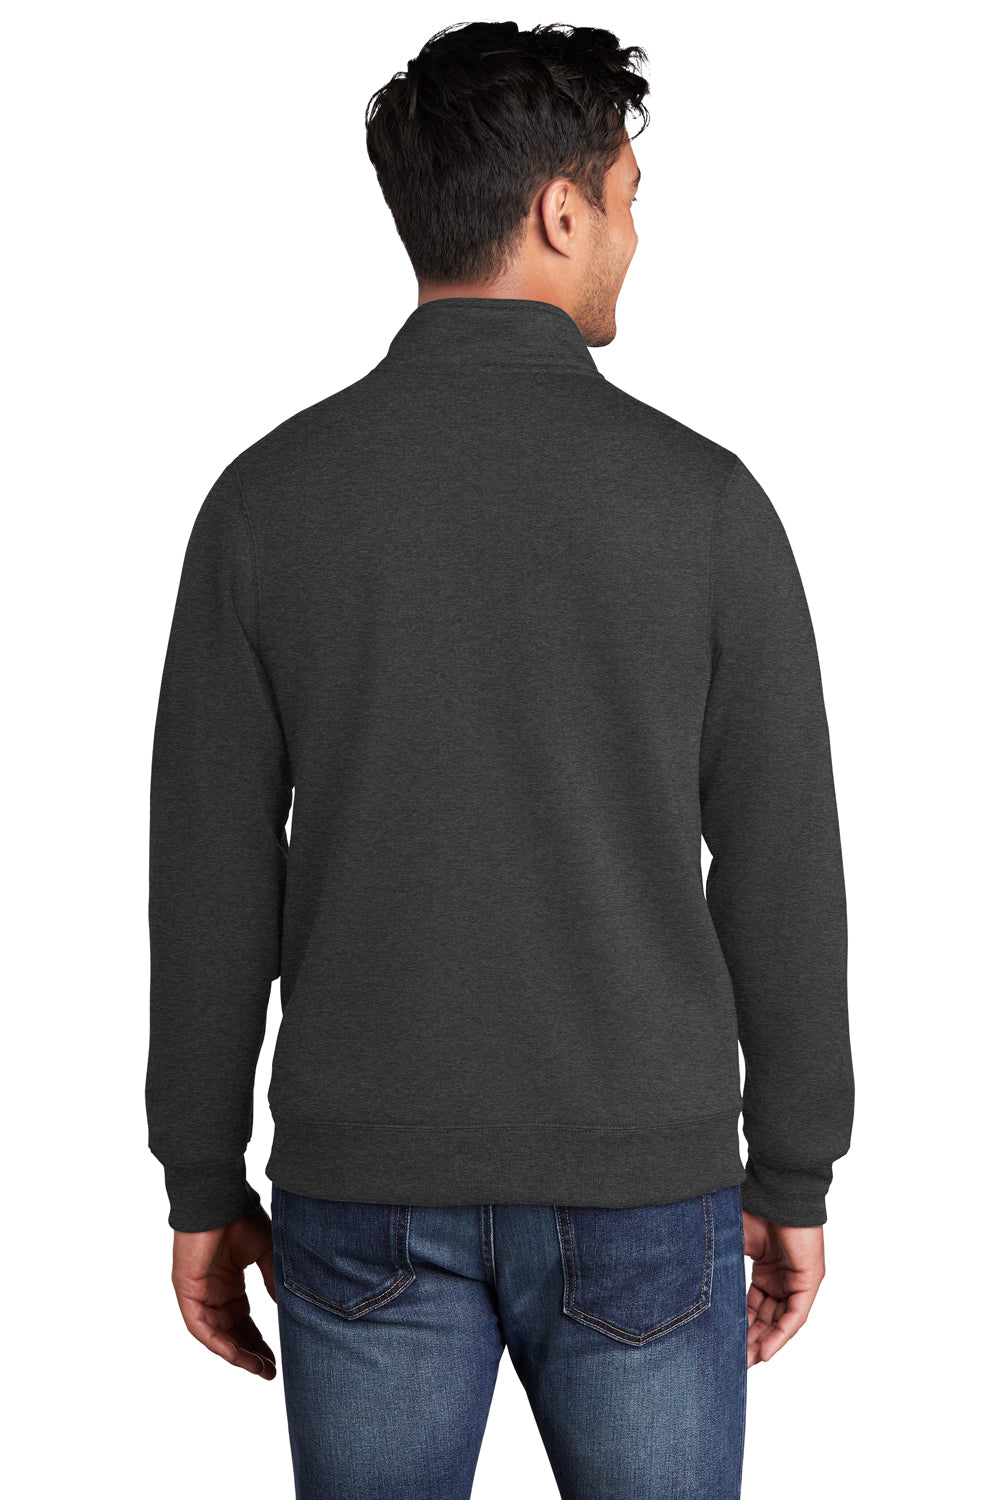 Port & Company Mens Core Fleece Full Zip Sweatshirt Heather Dark Grey Side